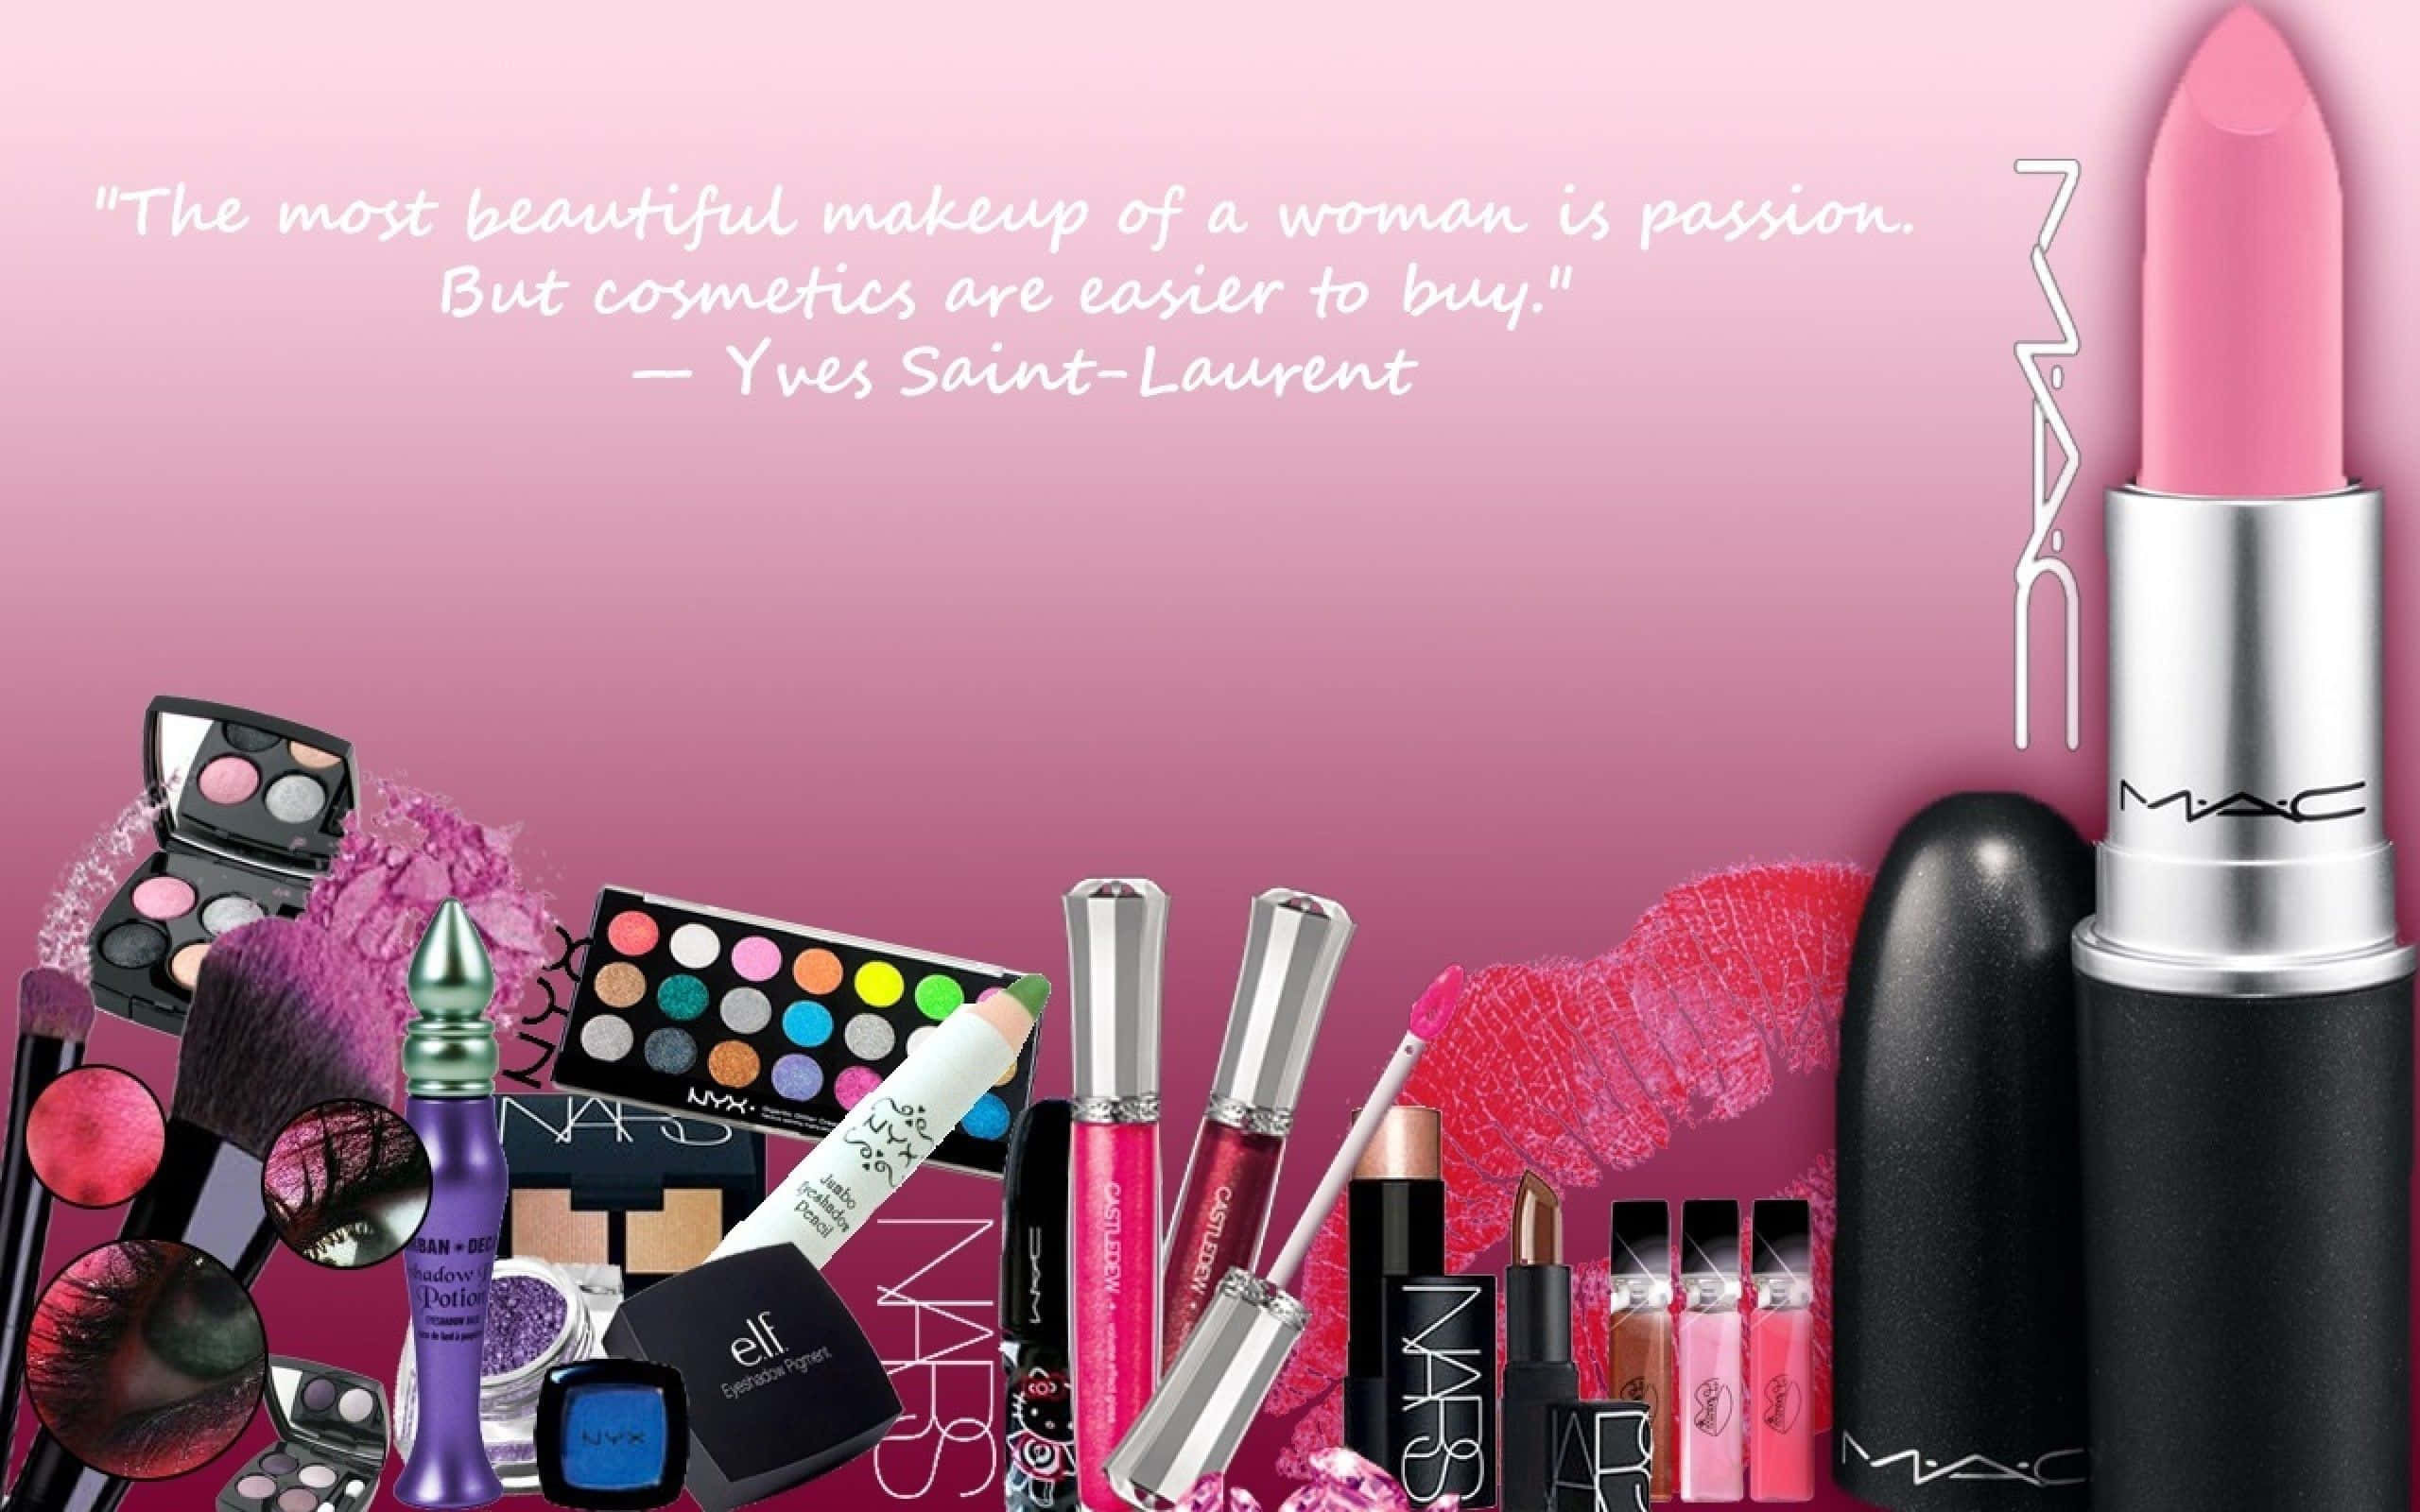 Verschönernsie Ihre Schönheit Mit Unserer Auswahl An Kosmetikprodukten.